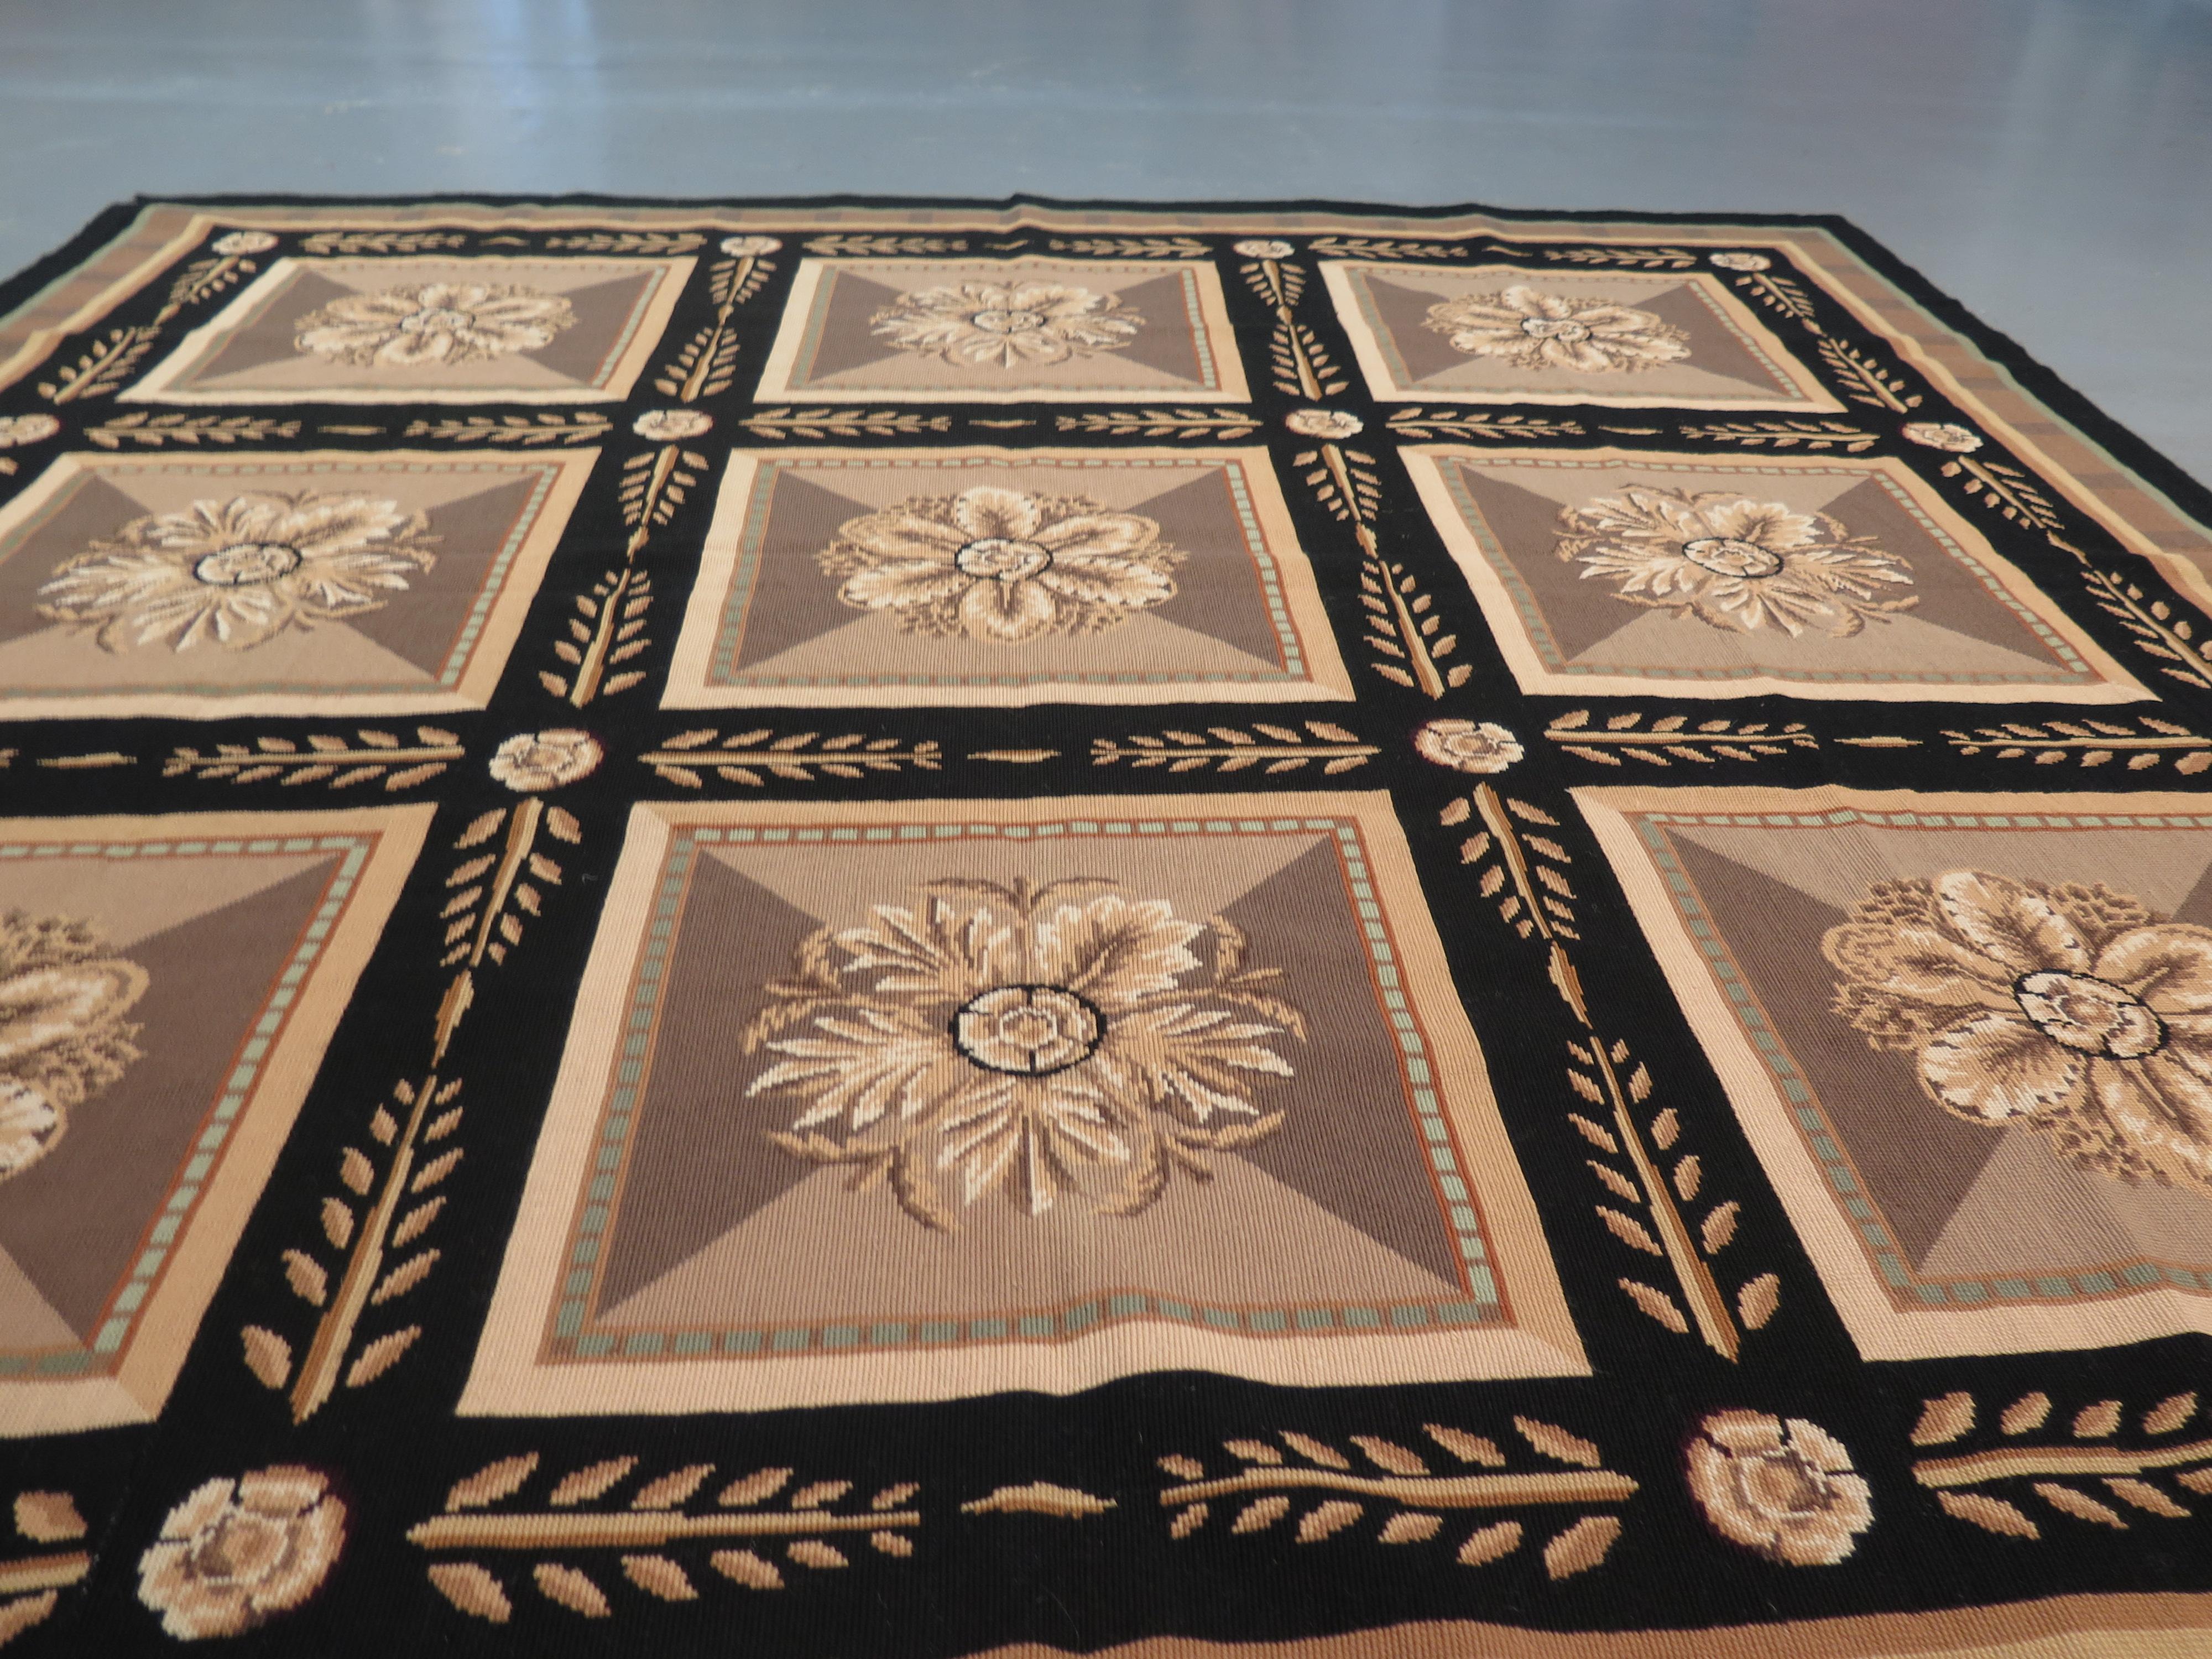 Les tapis à l'aiguille anglais sont produits depuis le XVIe siècle, mais ils ont connu une véritable renaissance aux XVIIIe et XIXe siècles, en intégrant une vaste gamme de nouvelles couleurs et de nouveaux styles. Cet exemple contemporain